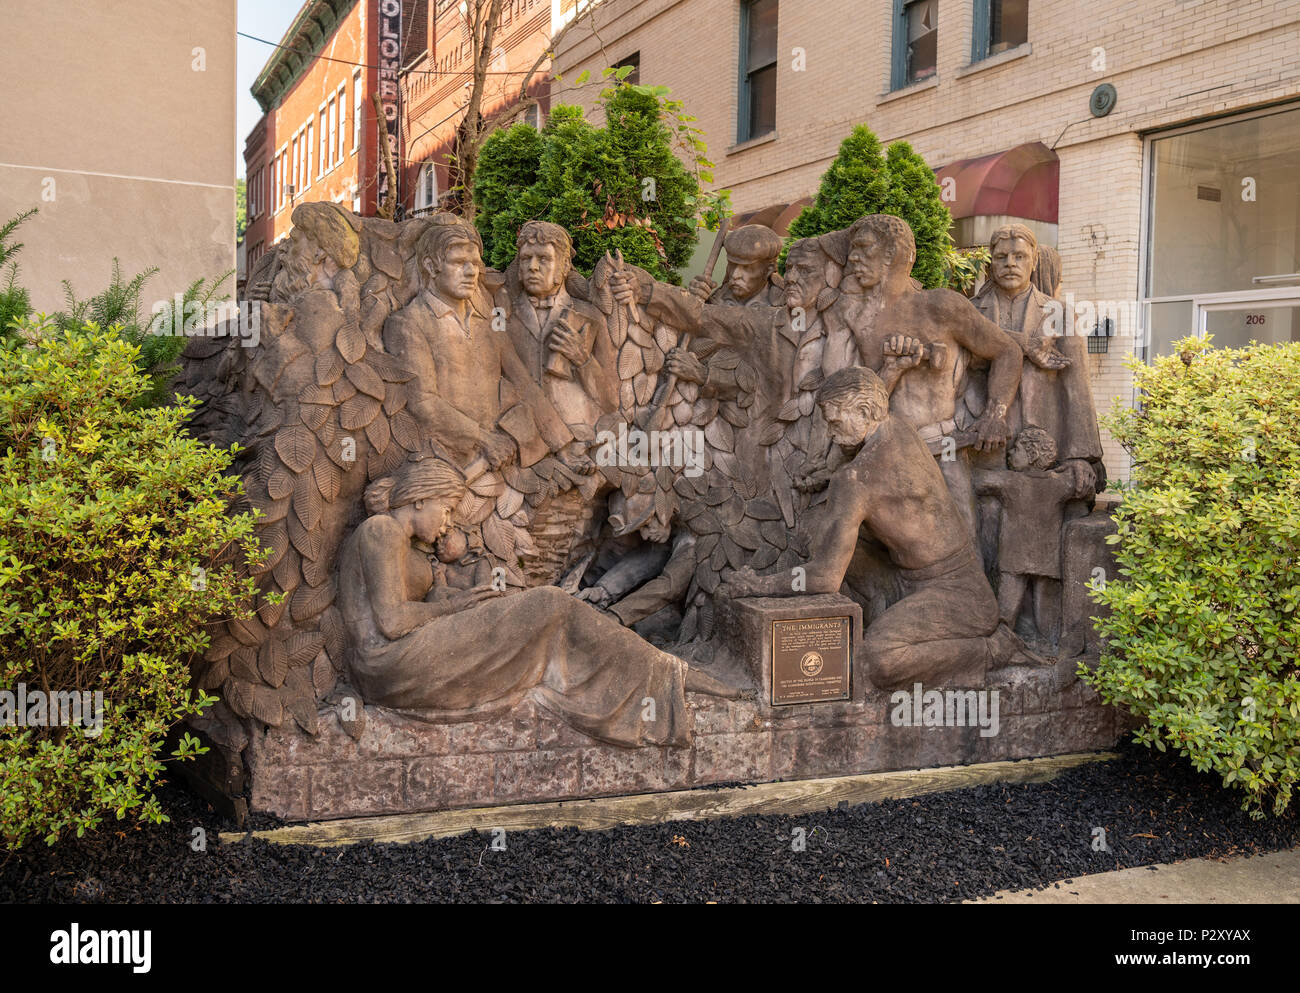 La statue d'immigrants dans la région de Clarksburg West Virginia Banque D'Images